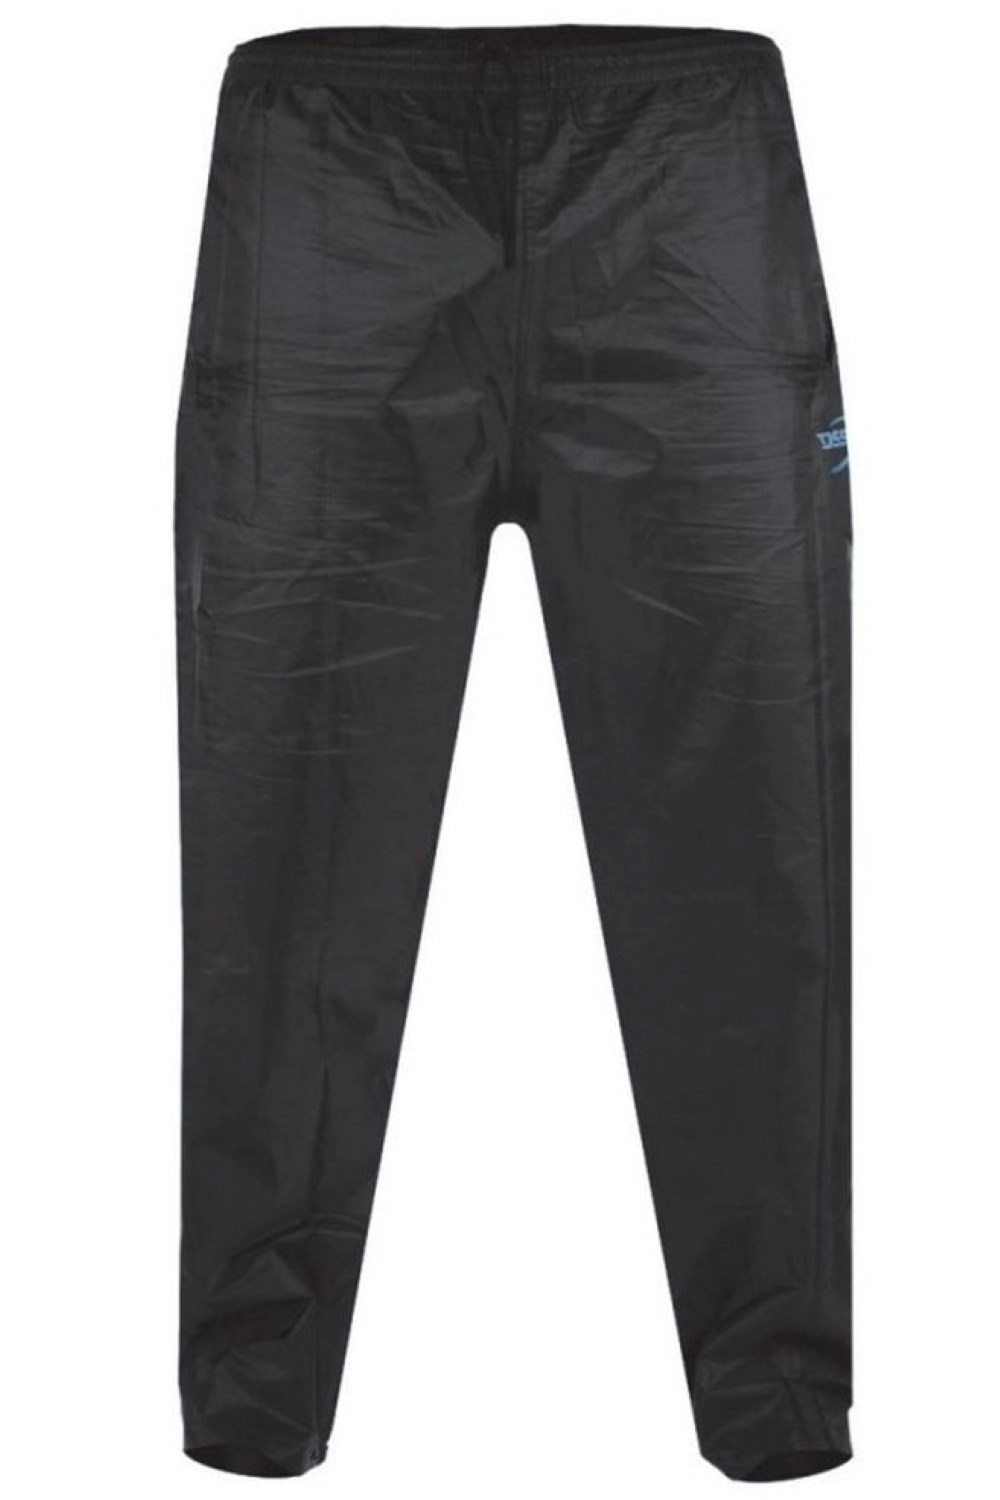 Waterproof Pants - Buy Waterproof Pants online at Best Prices in India |  Flipkart.com